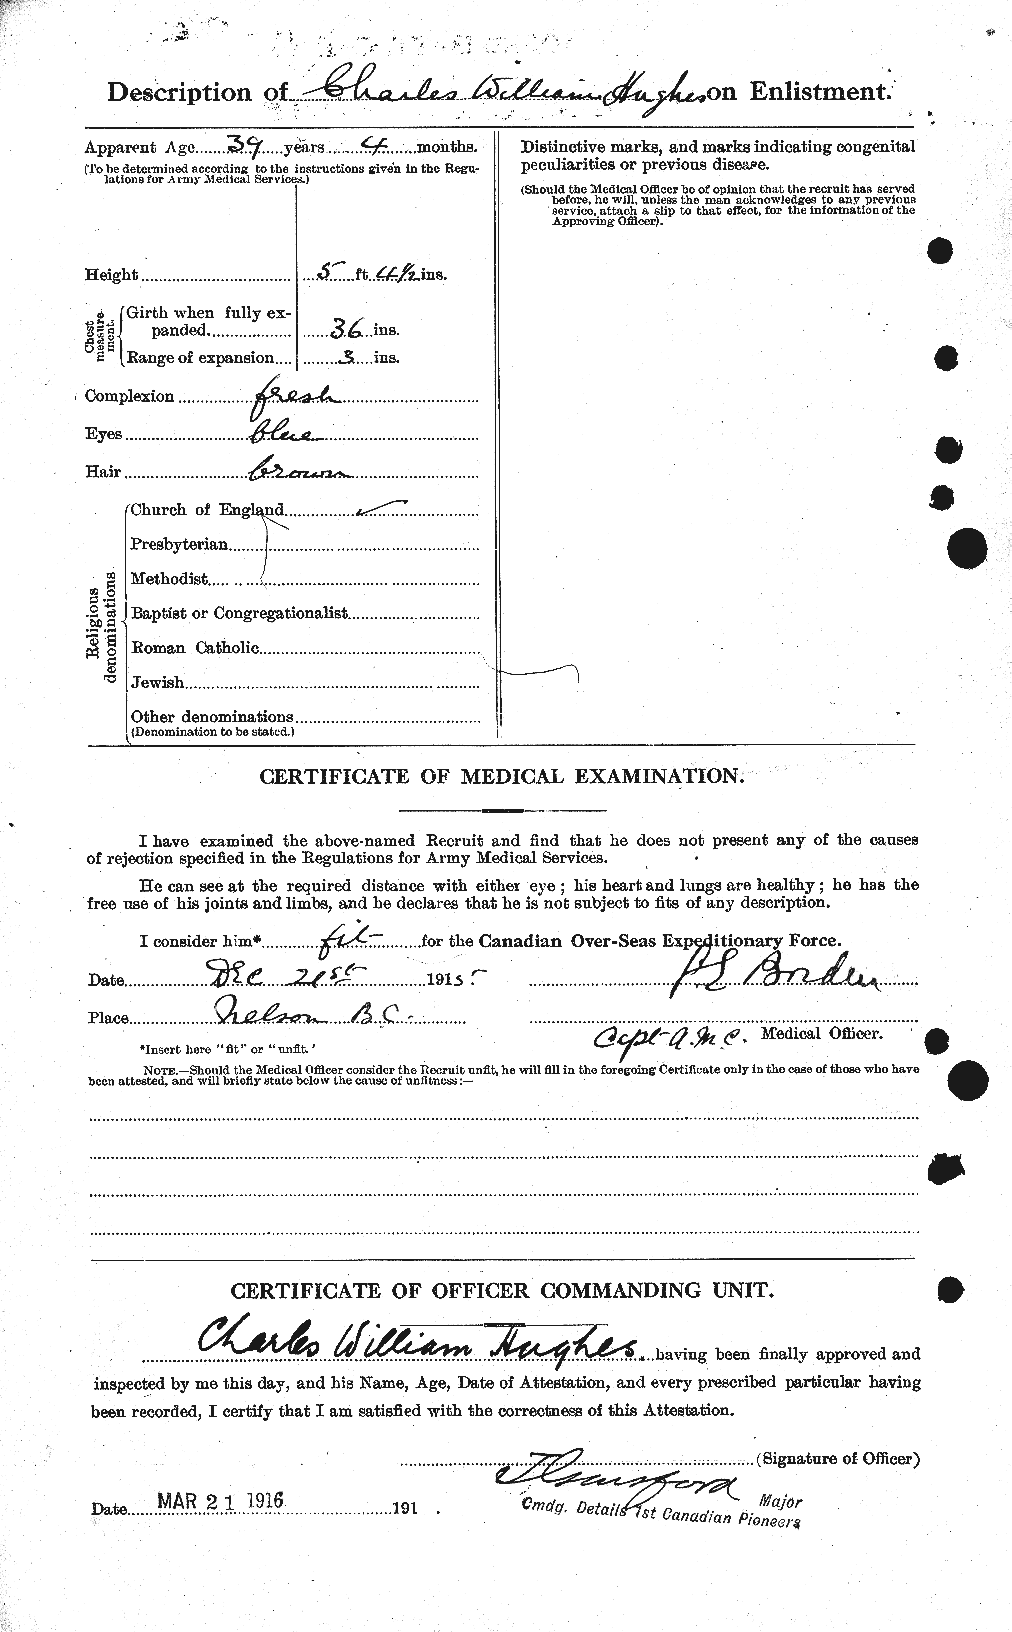 Dossiers du Personnel de la Première Guerre mondiale - CEC 402618b